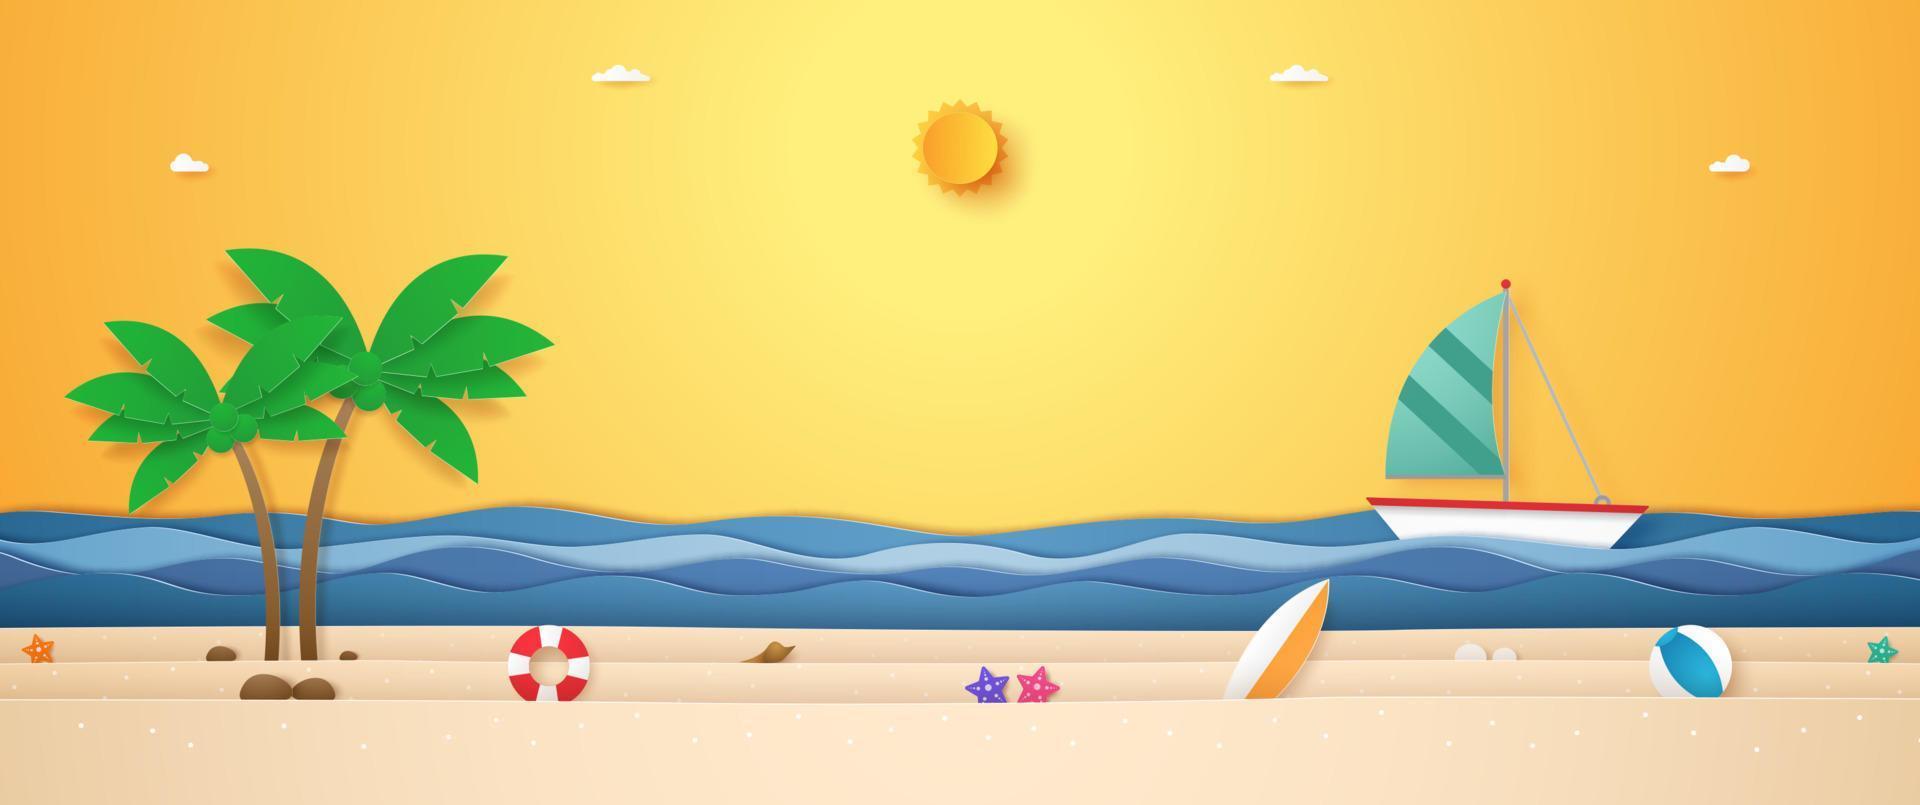 paesaggio di barca a vela sul mare ondulato, roba estiva e albero di cocco sulla spiaggia con sole splendente nel cielo del sole per l'estate in stile arte cartacea vettore